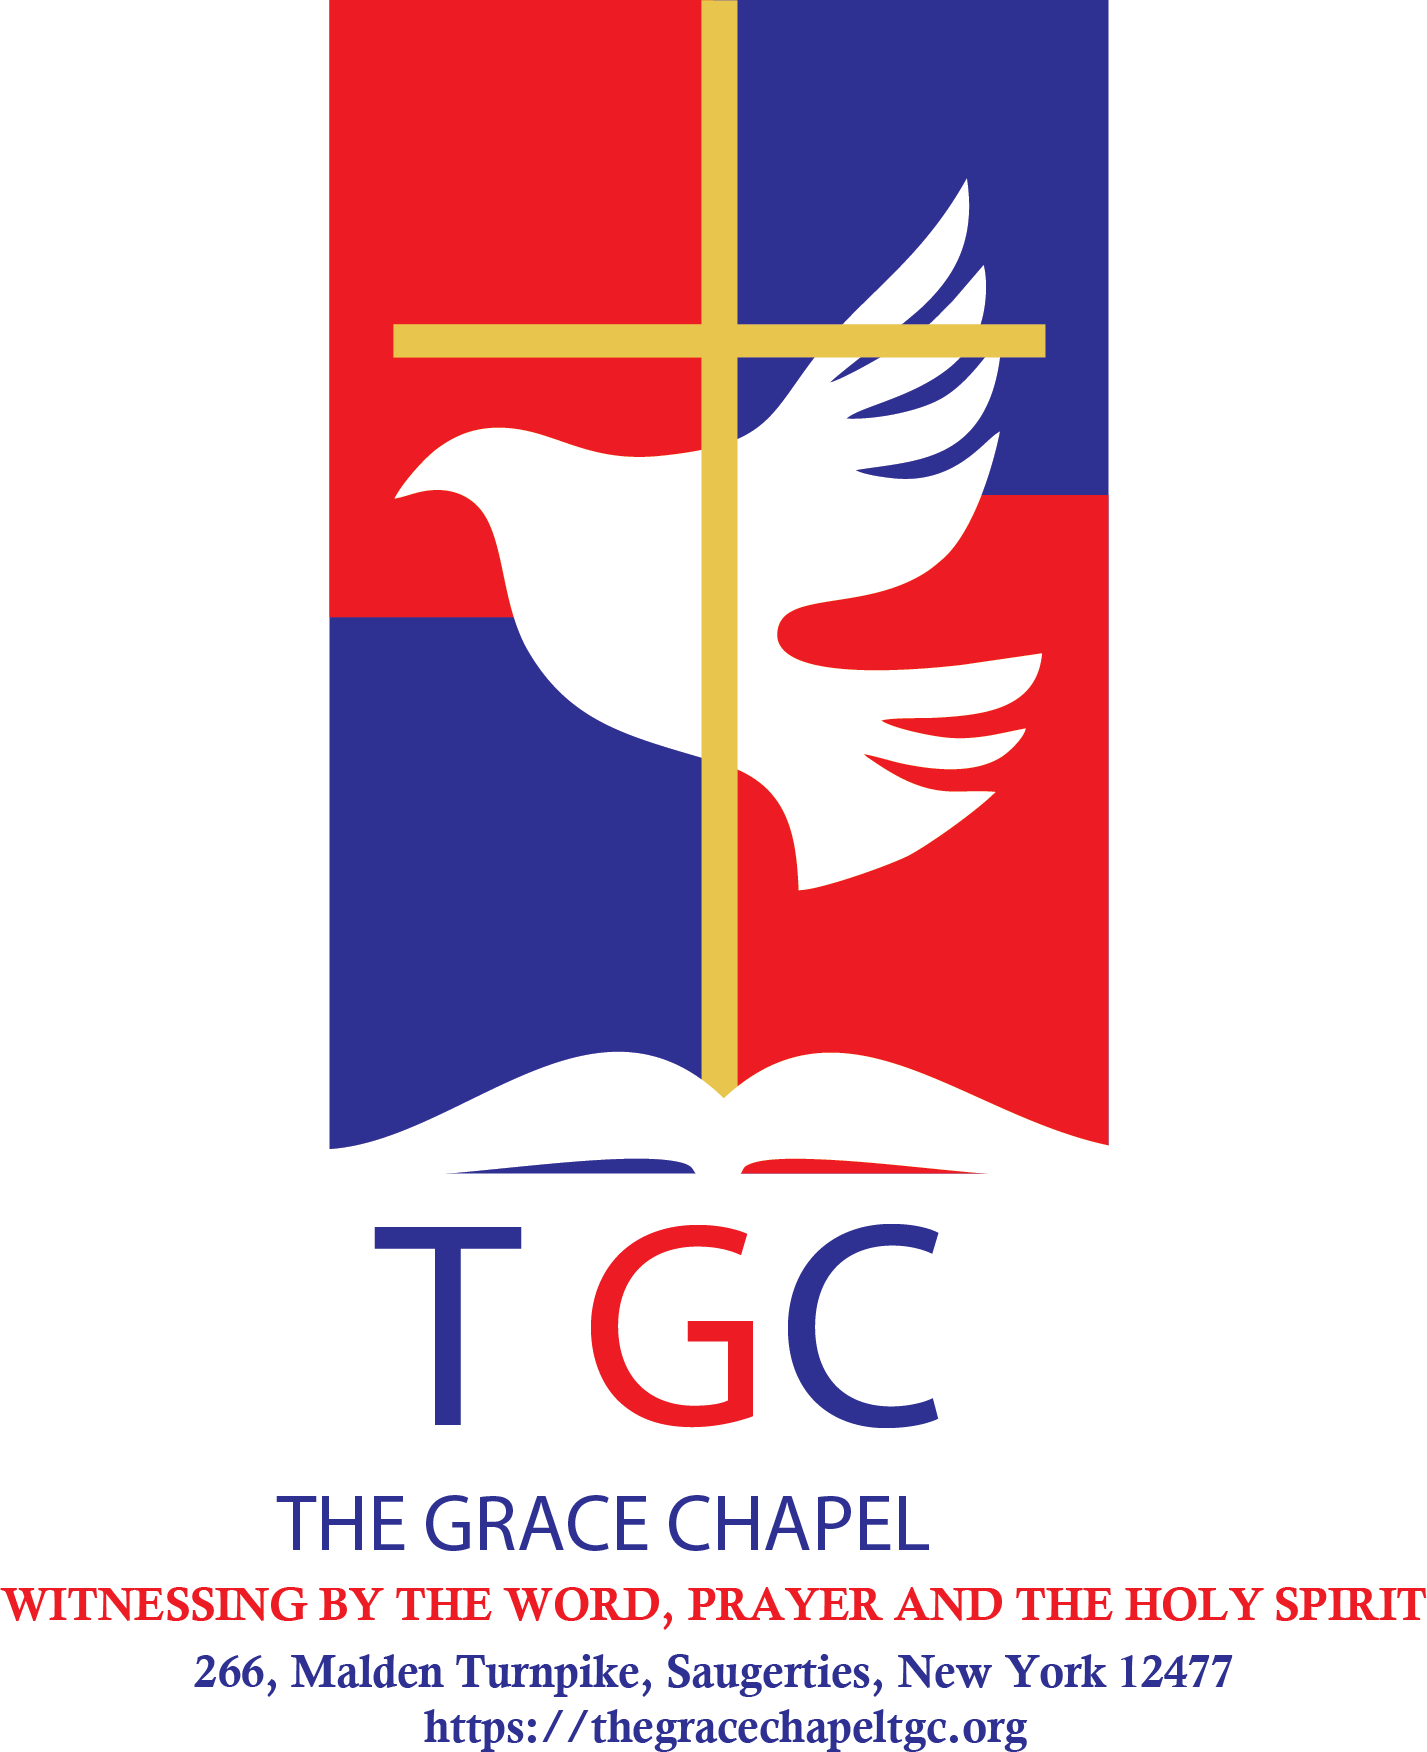 The Grace Chapel